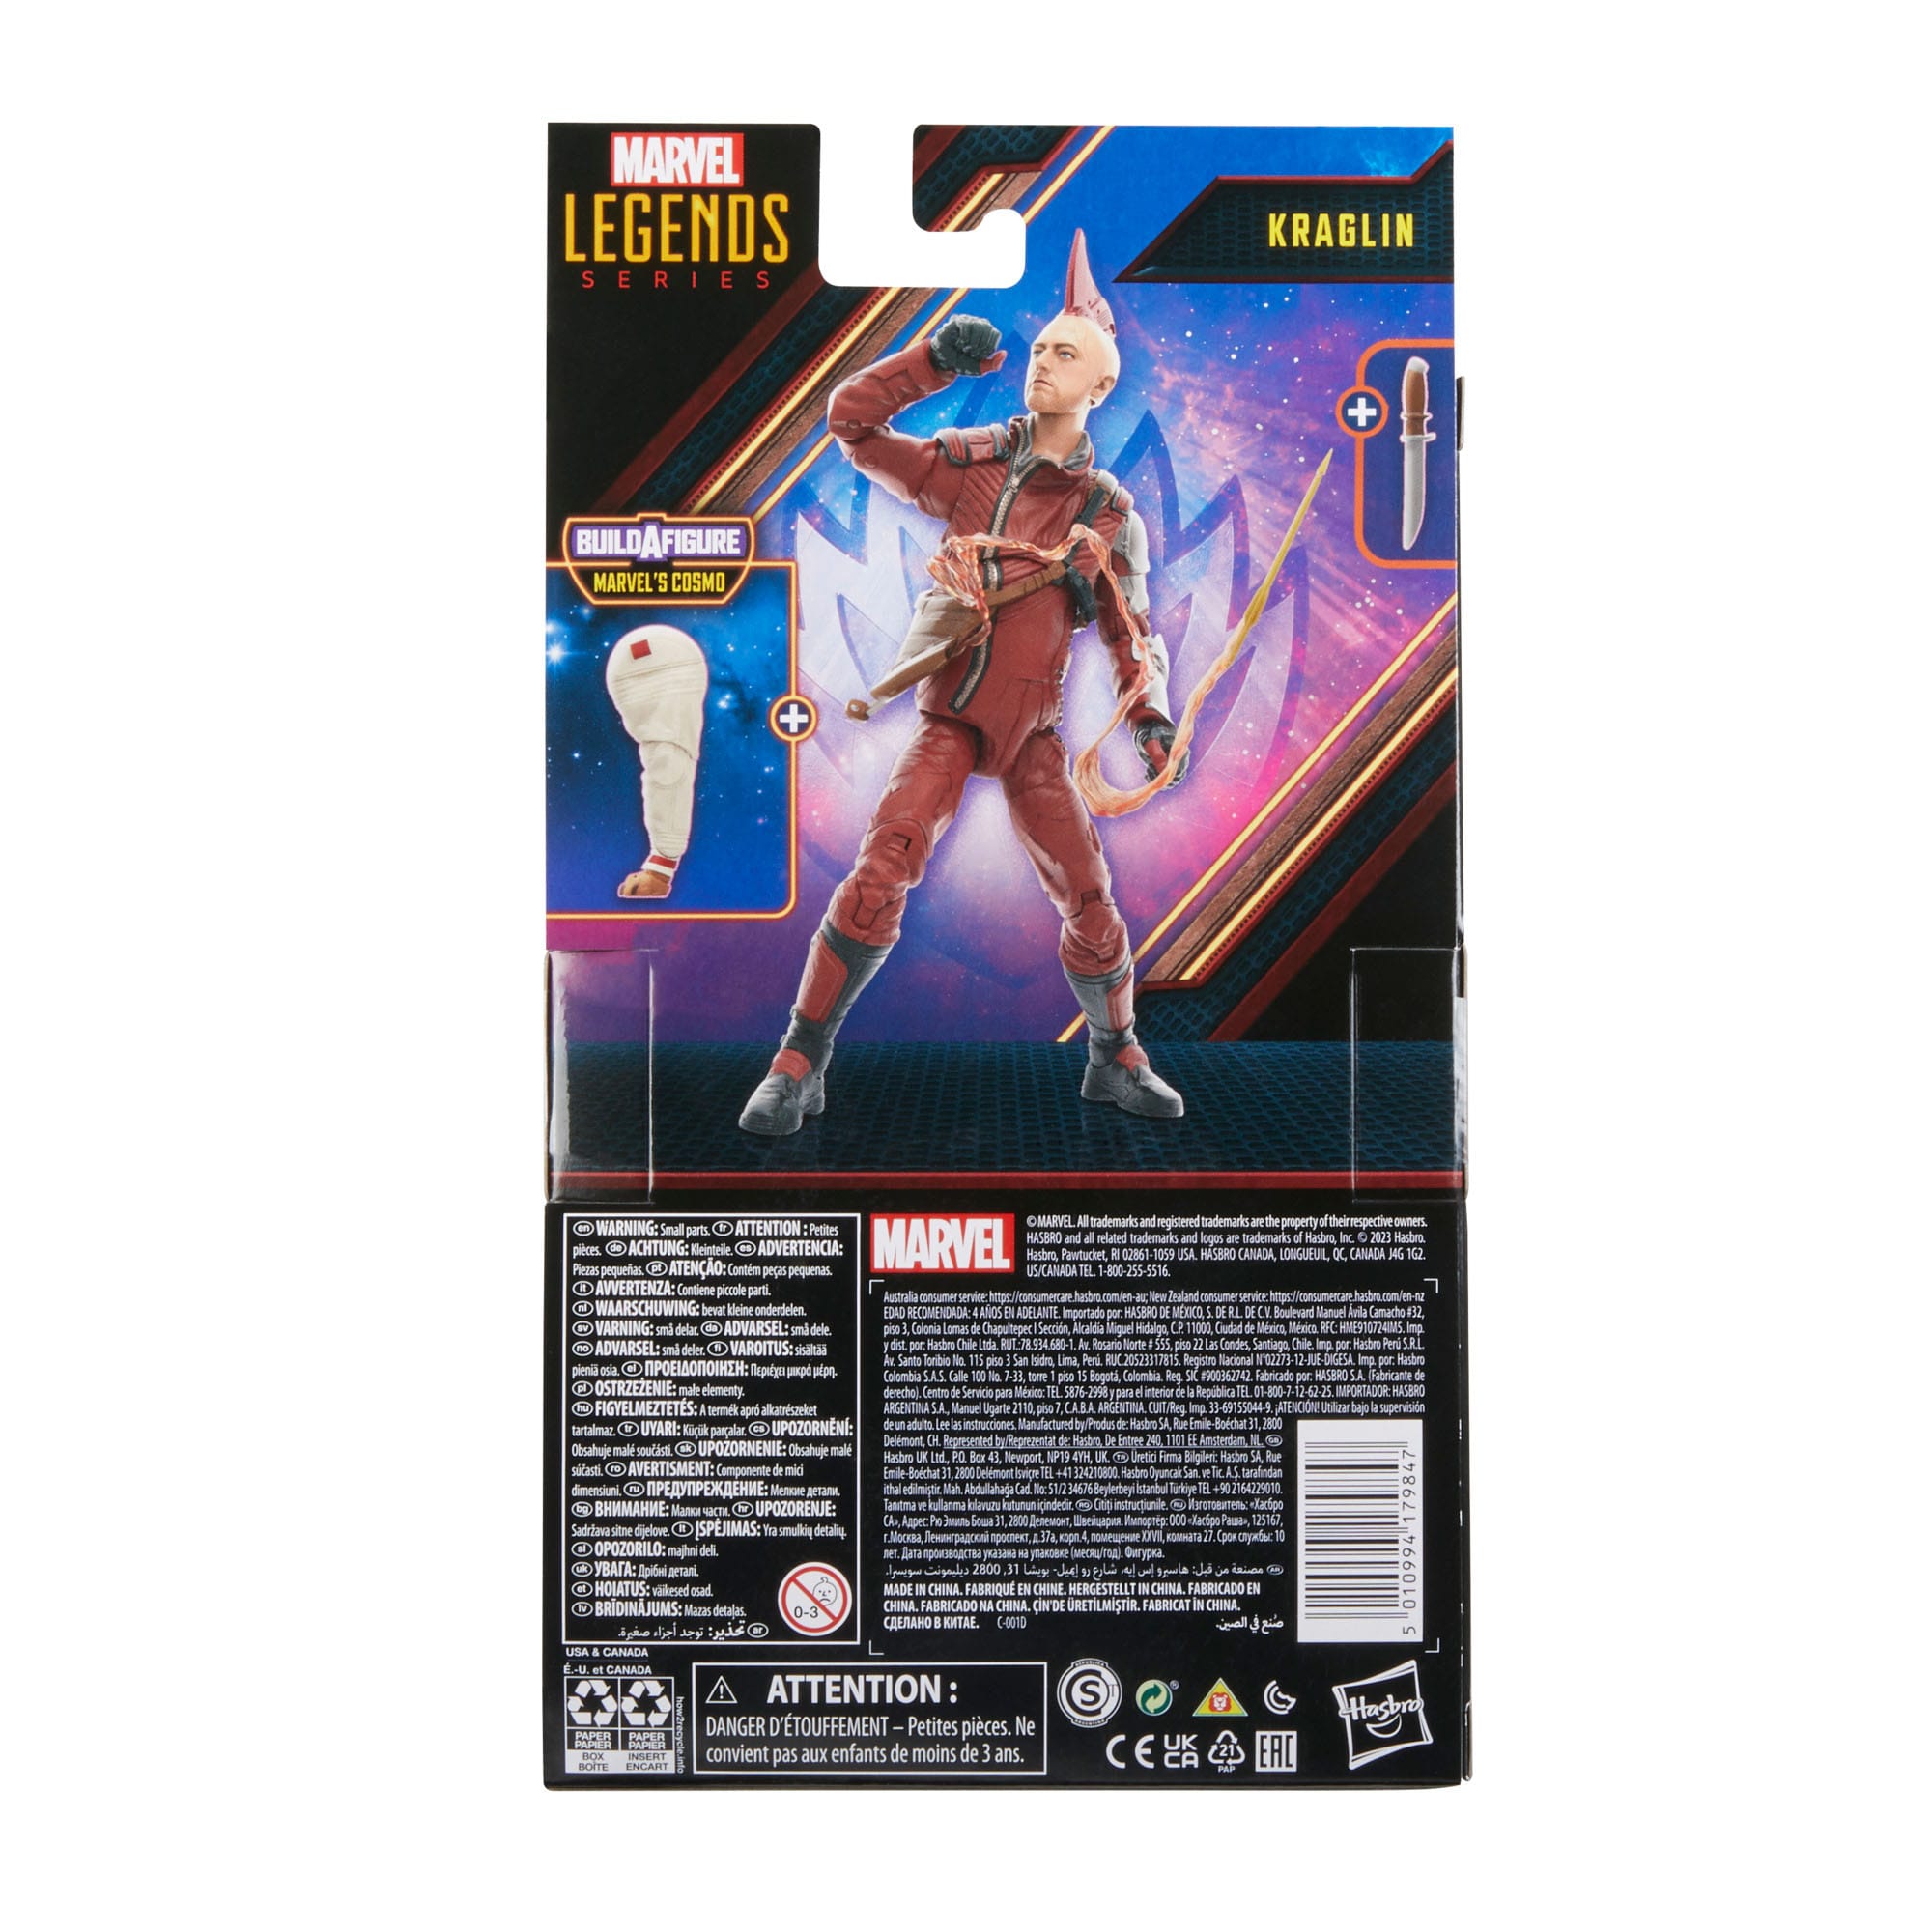 Guardians of the Galaxy Comics Marvel Legends Actionfigur Kraglin 15 cm HASF7406 5010994179847